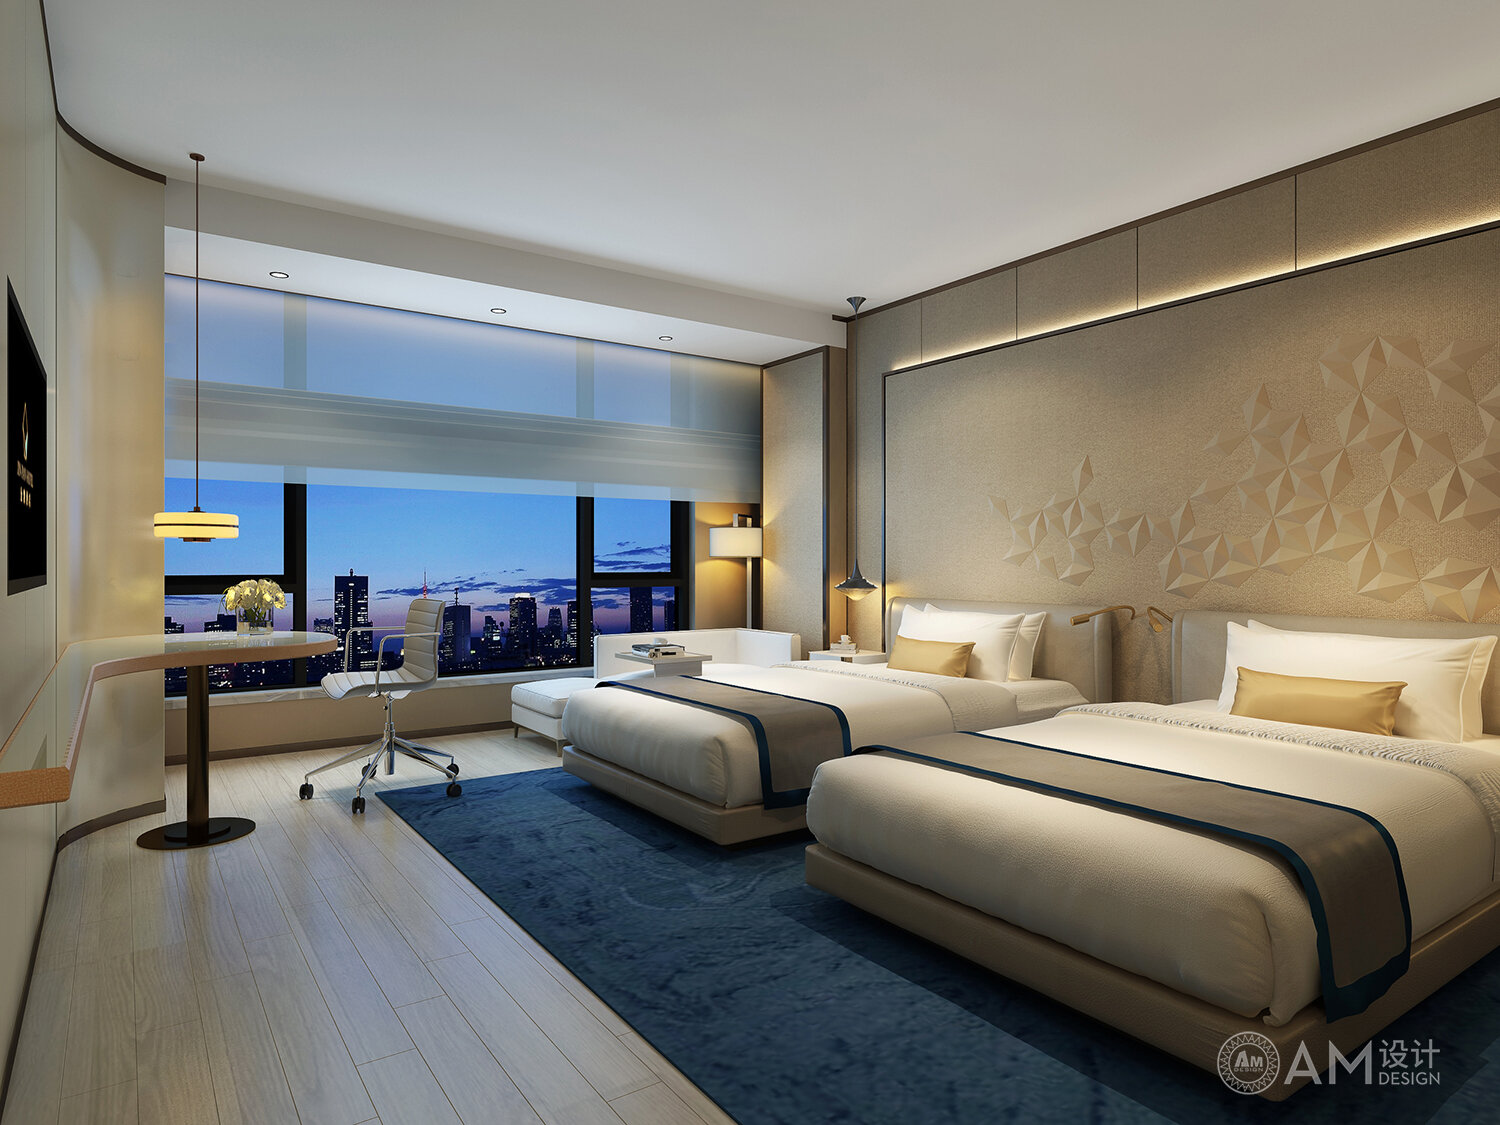 AM DESIGN | Shaanxi Jinpan Hotel Guest Room Design